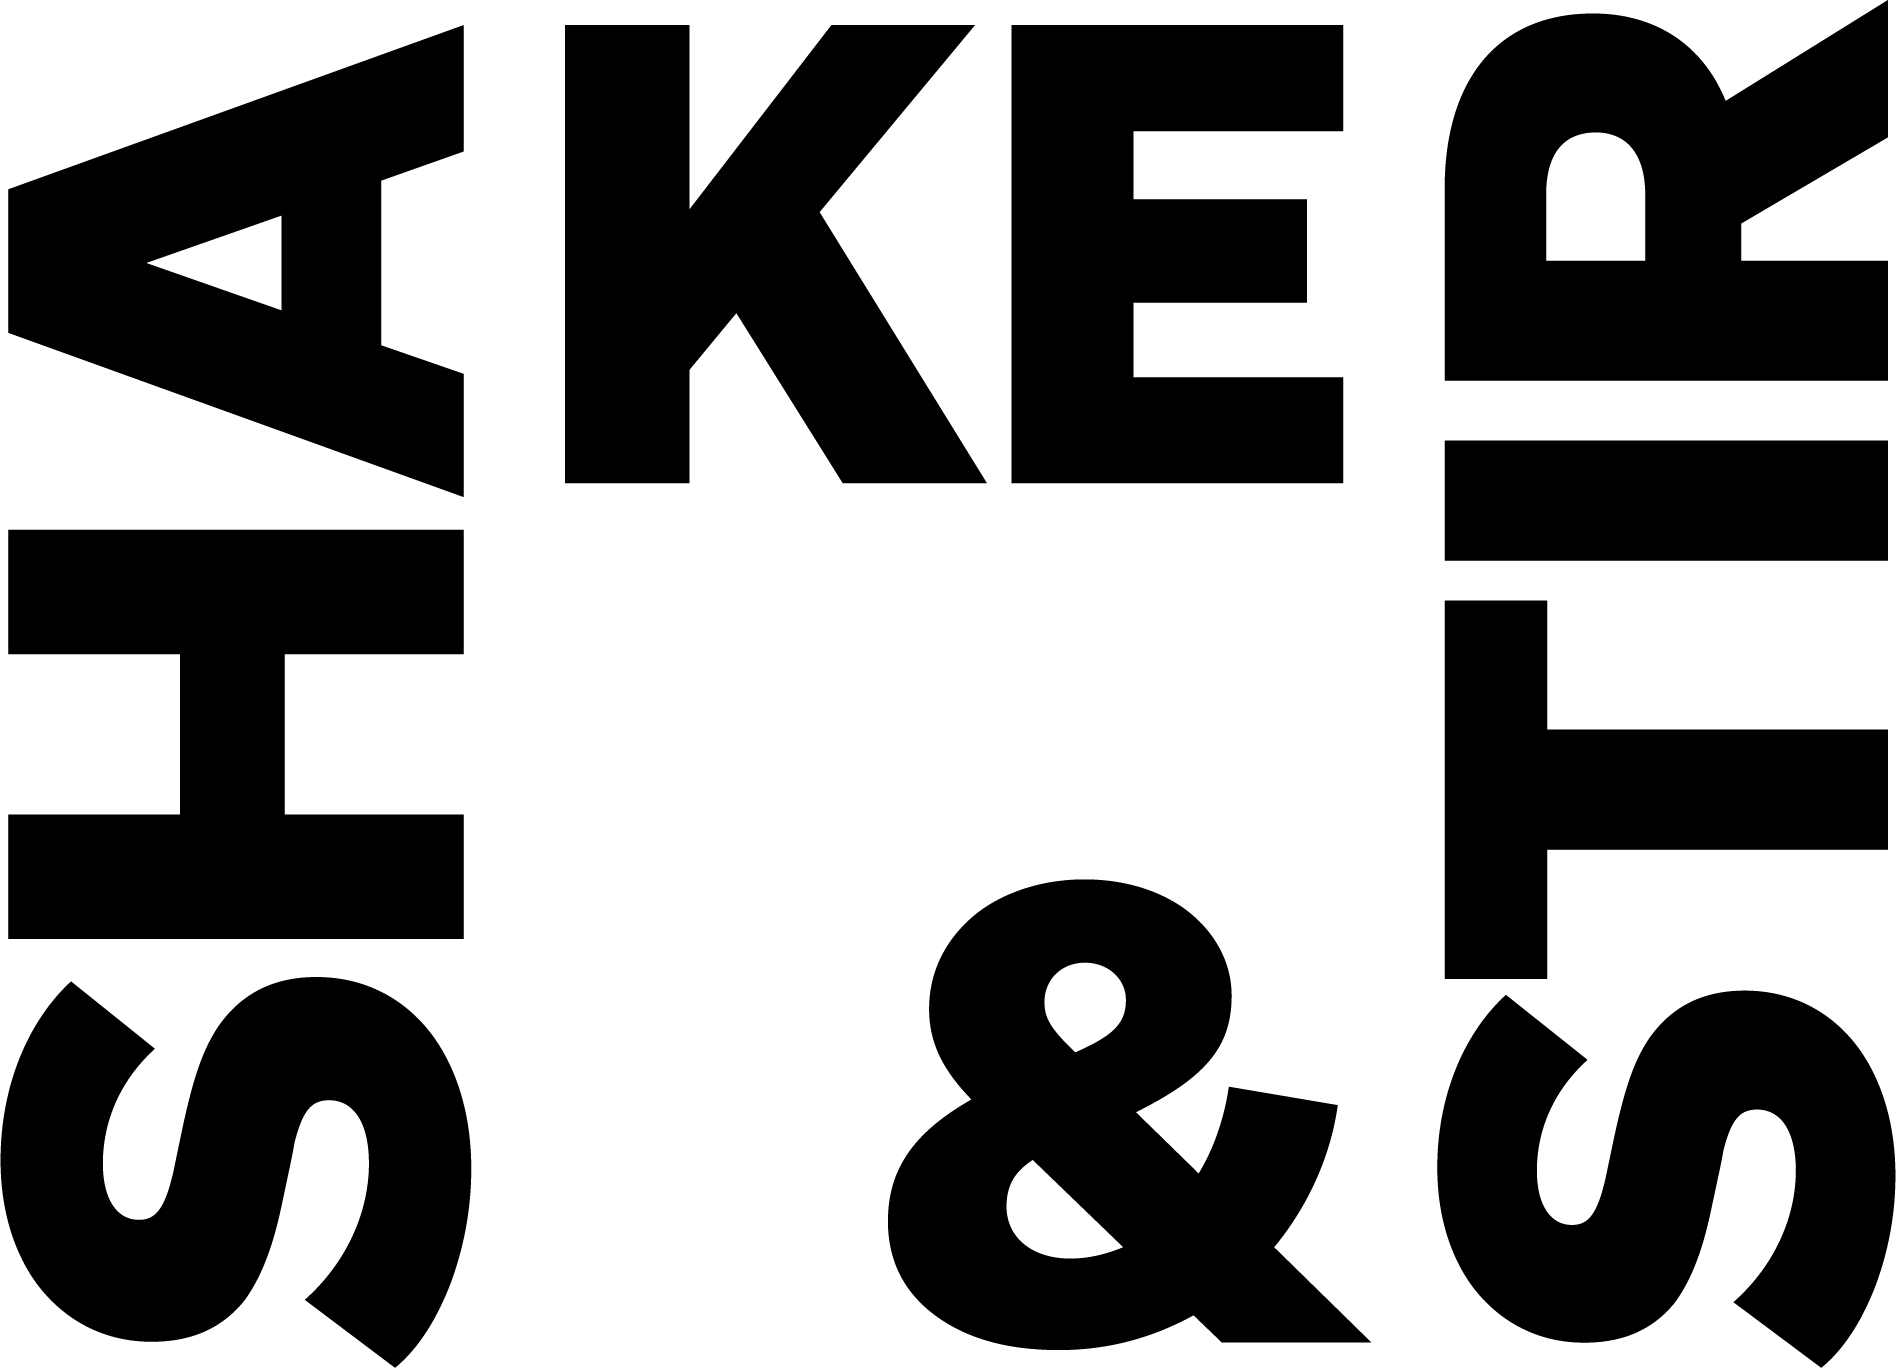 shake-and-stir-horizontal-logo-black.png logo